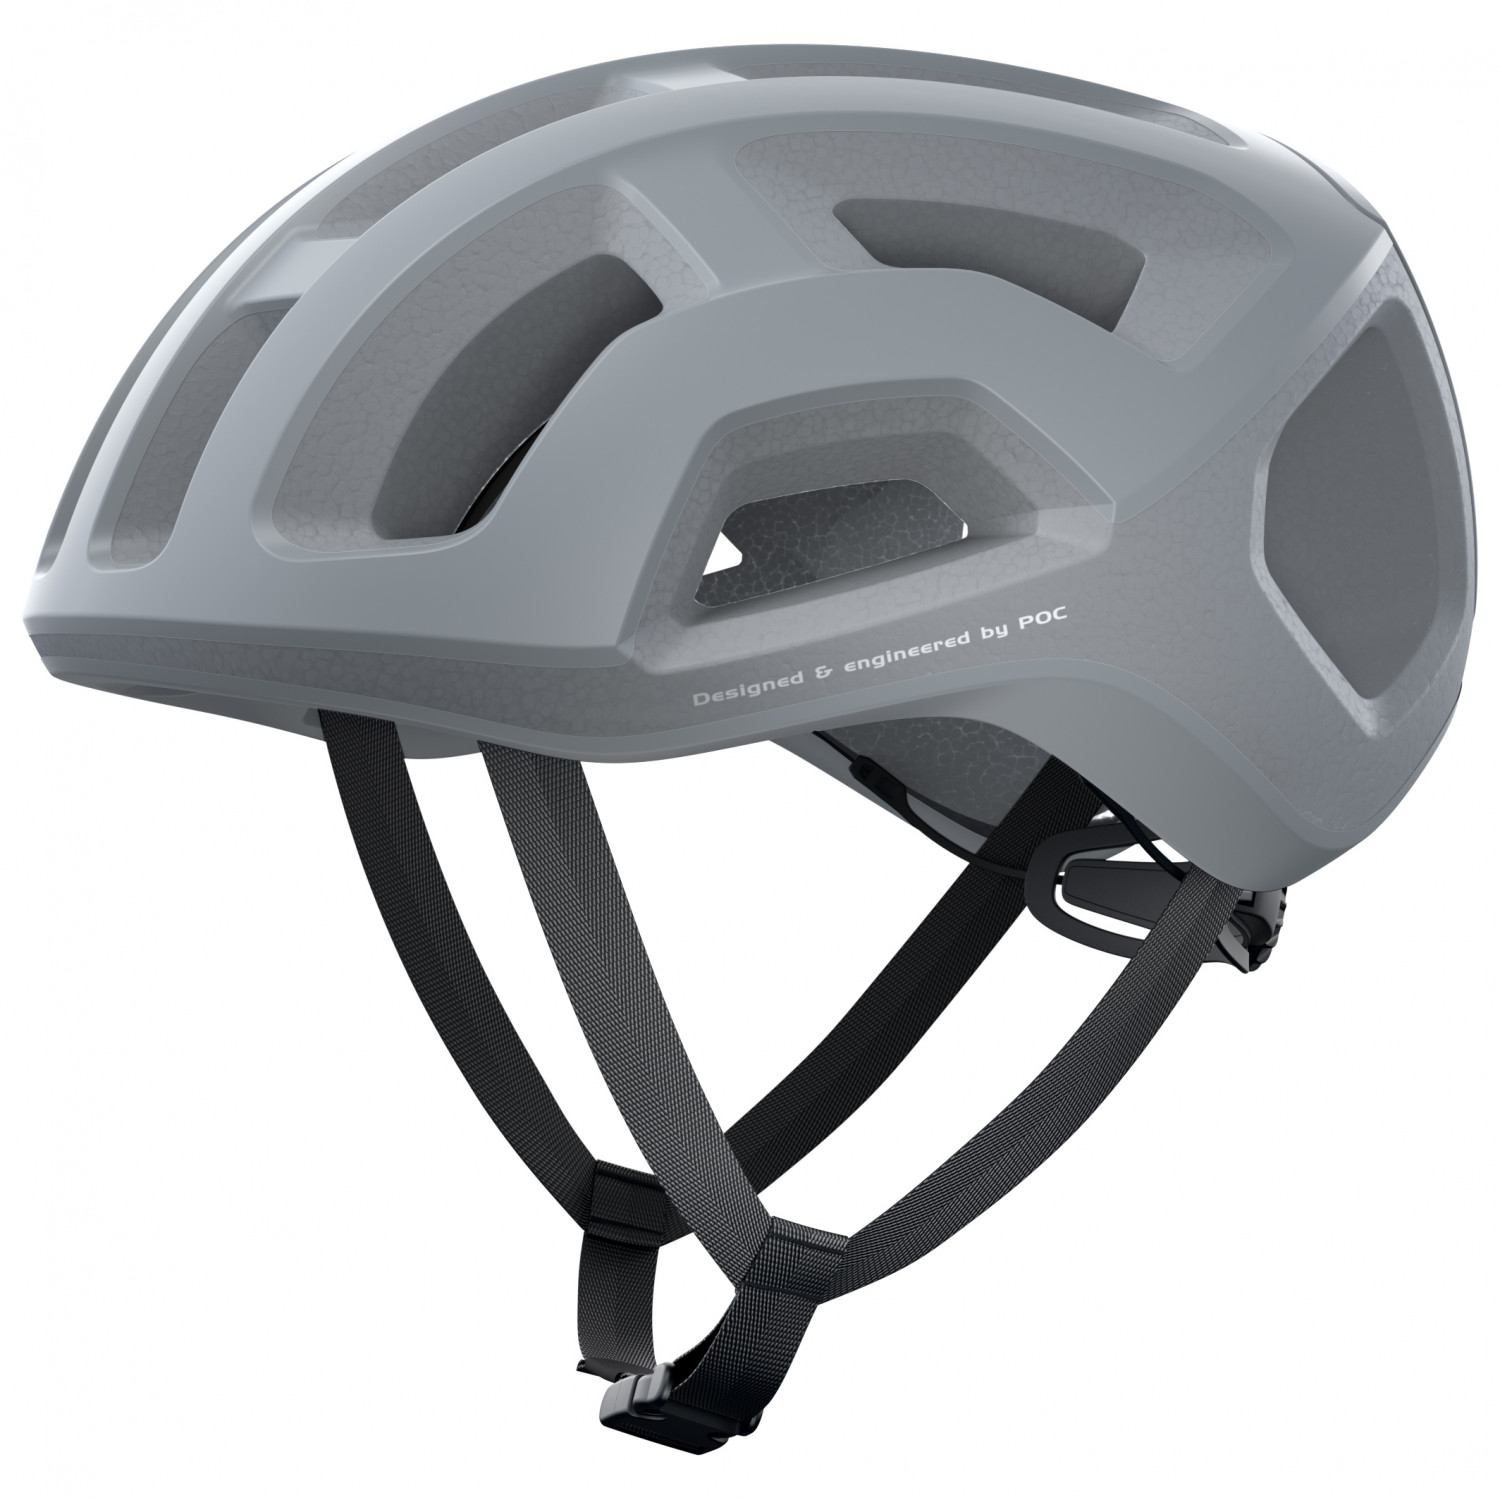 Велосипедный шлем Poc Ventral Lite, цвет Granite Grey Matt